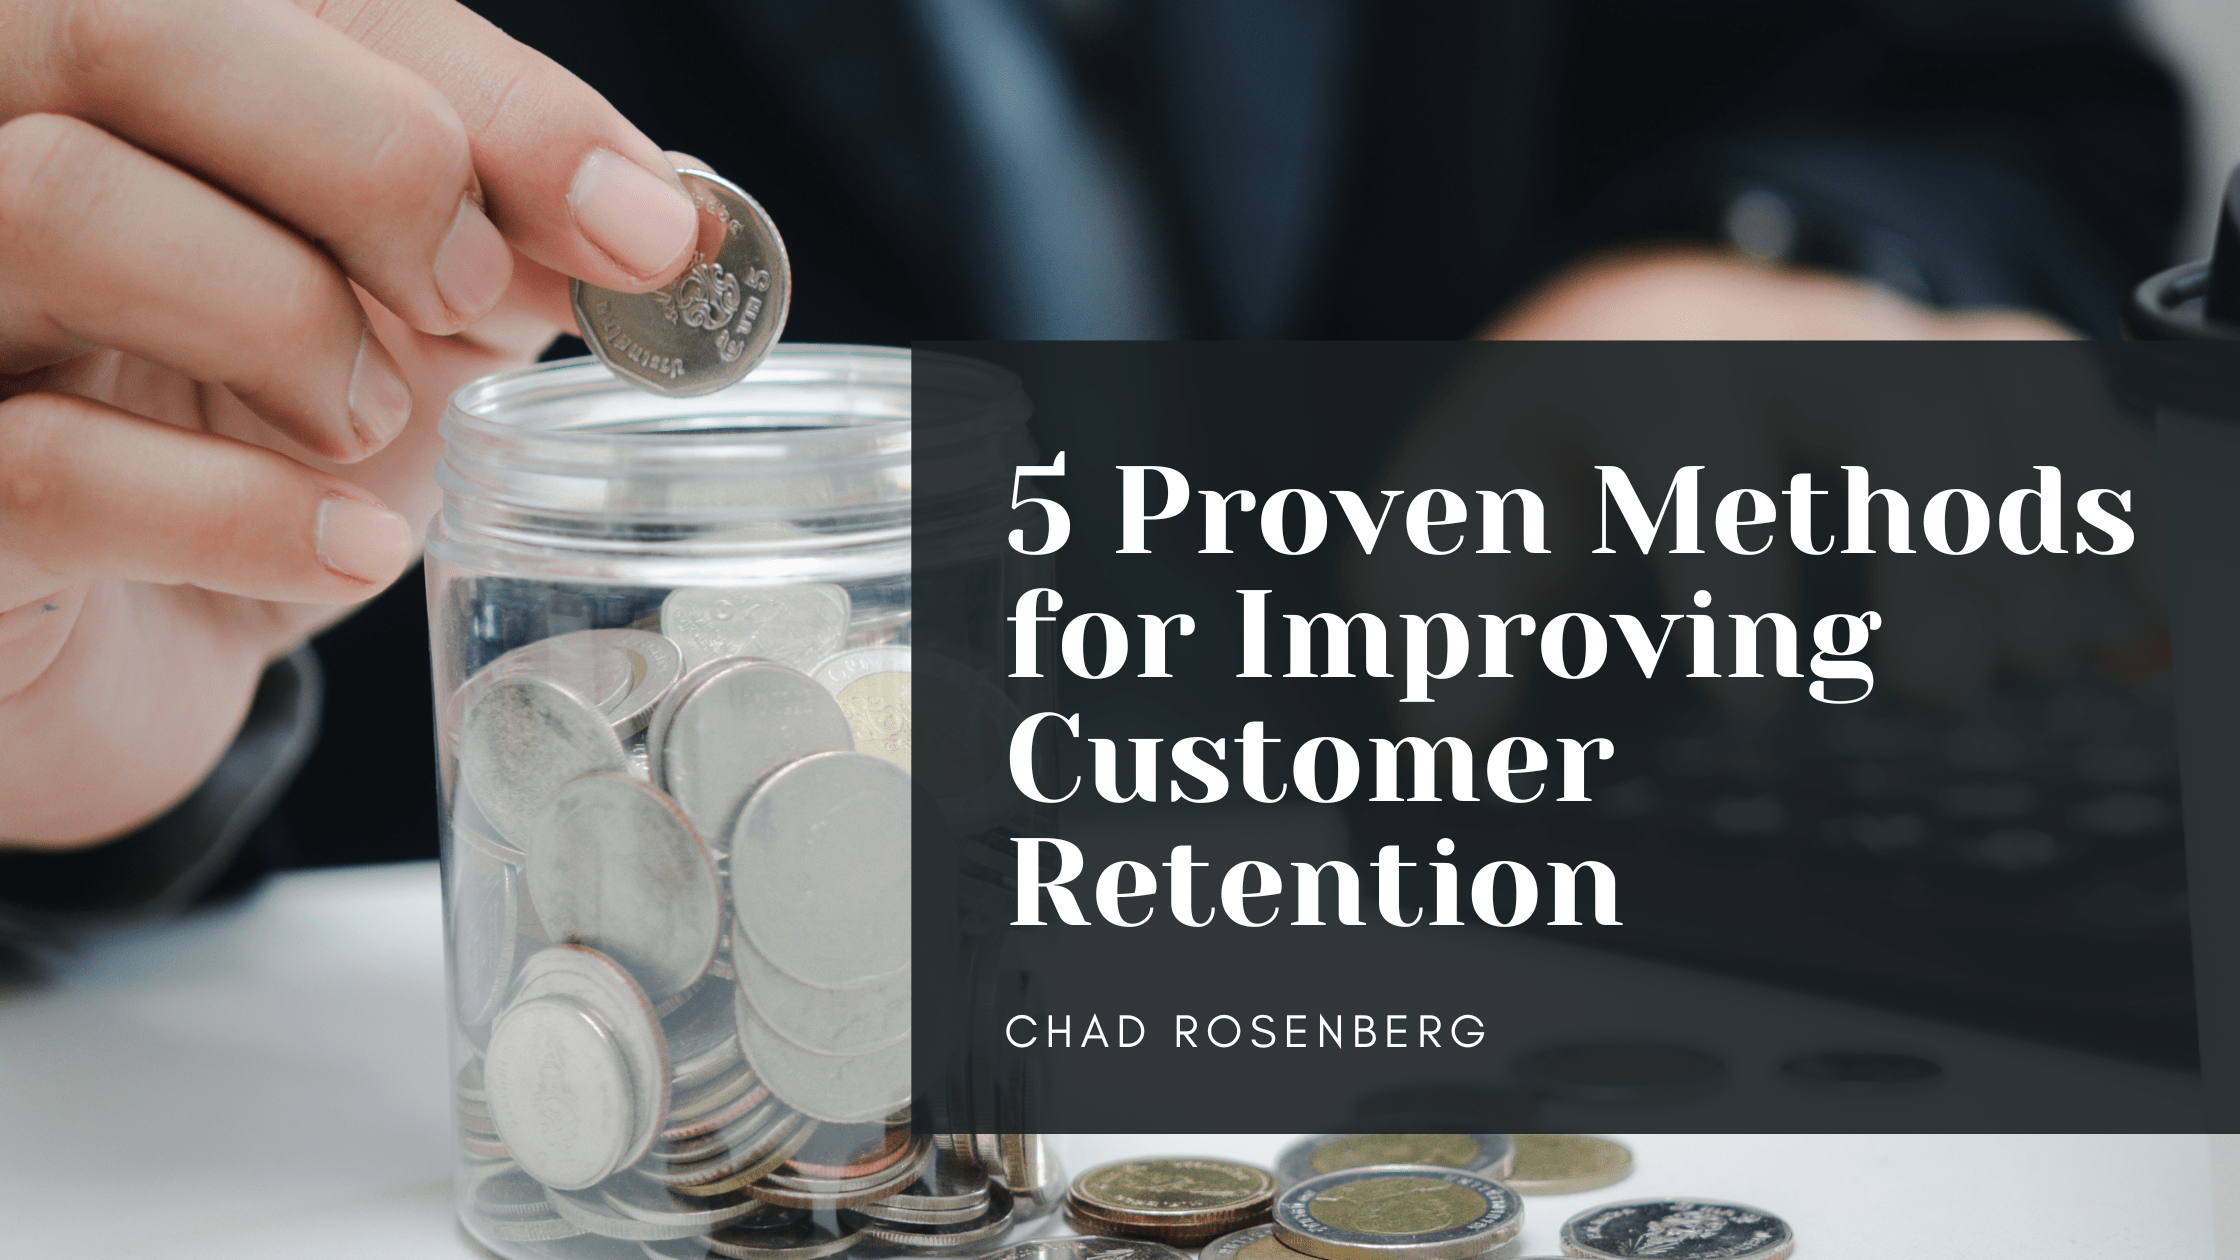 Chad Rosenberg - 5 Proven Methods for Improving Customer Retention-min